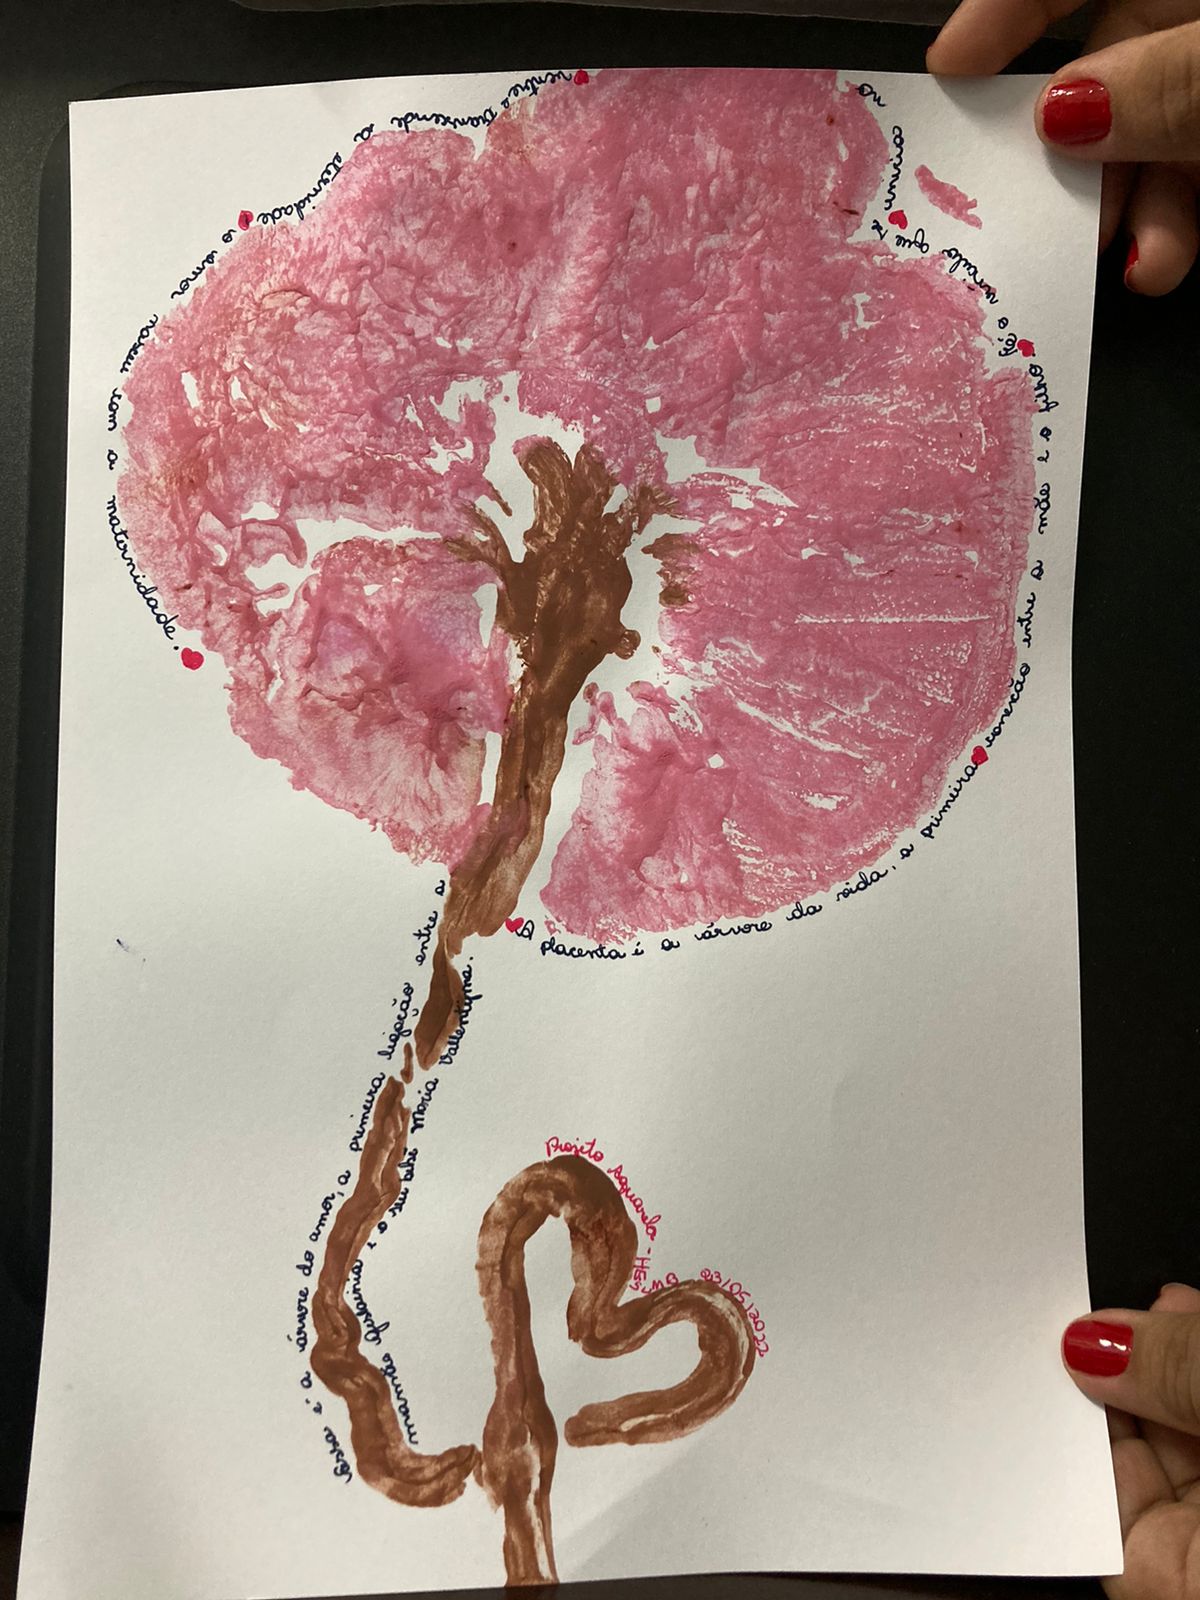 parto humanizado carimbo da placenta em cor de rosa semelhante a uma árvore.